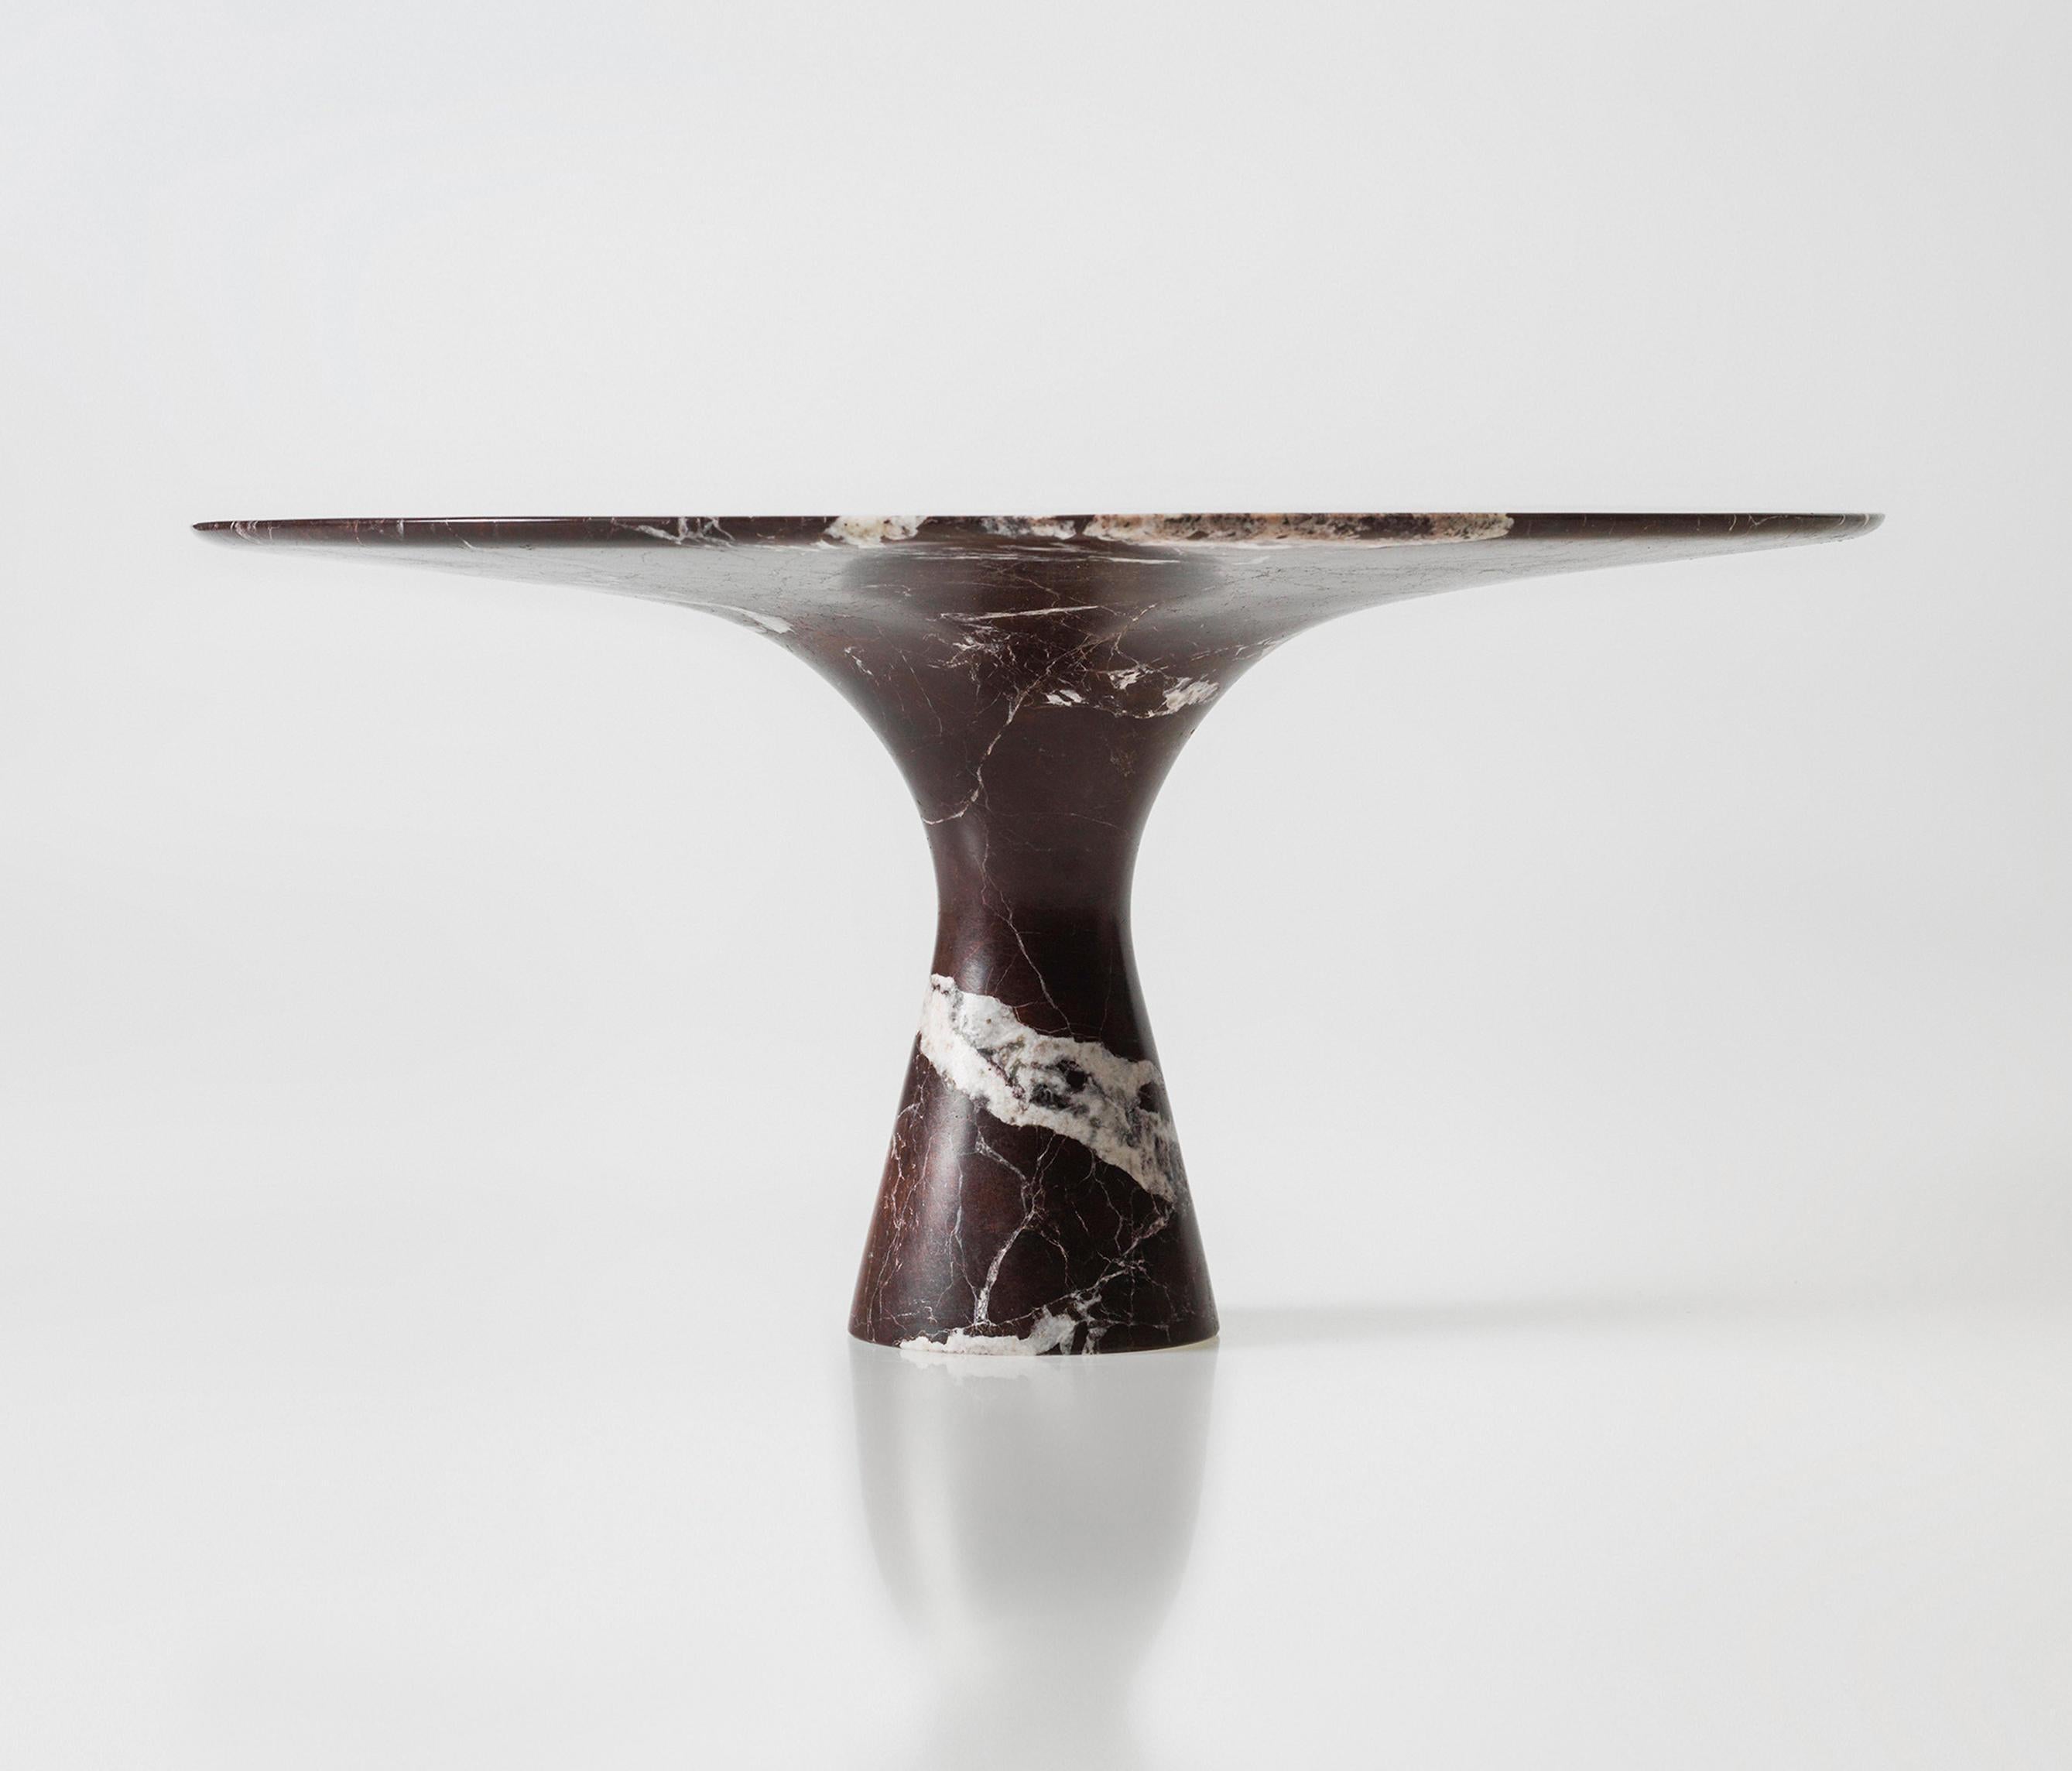 Rosso Lepanto Table de salle à manger contemporaine raffinée en marbre 130/75
Dimensions : 130 x 75 cm : 130 x 75 cm
MATERIAL : Rosso Lepanto

Angelo est l'essence même d'une table ronde en pierre naturelle, une forme sculpturale dans un matériau